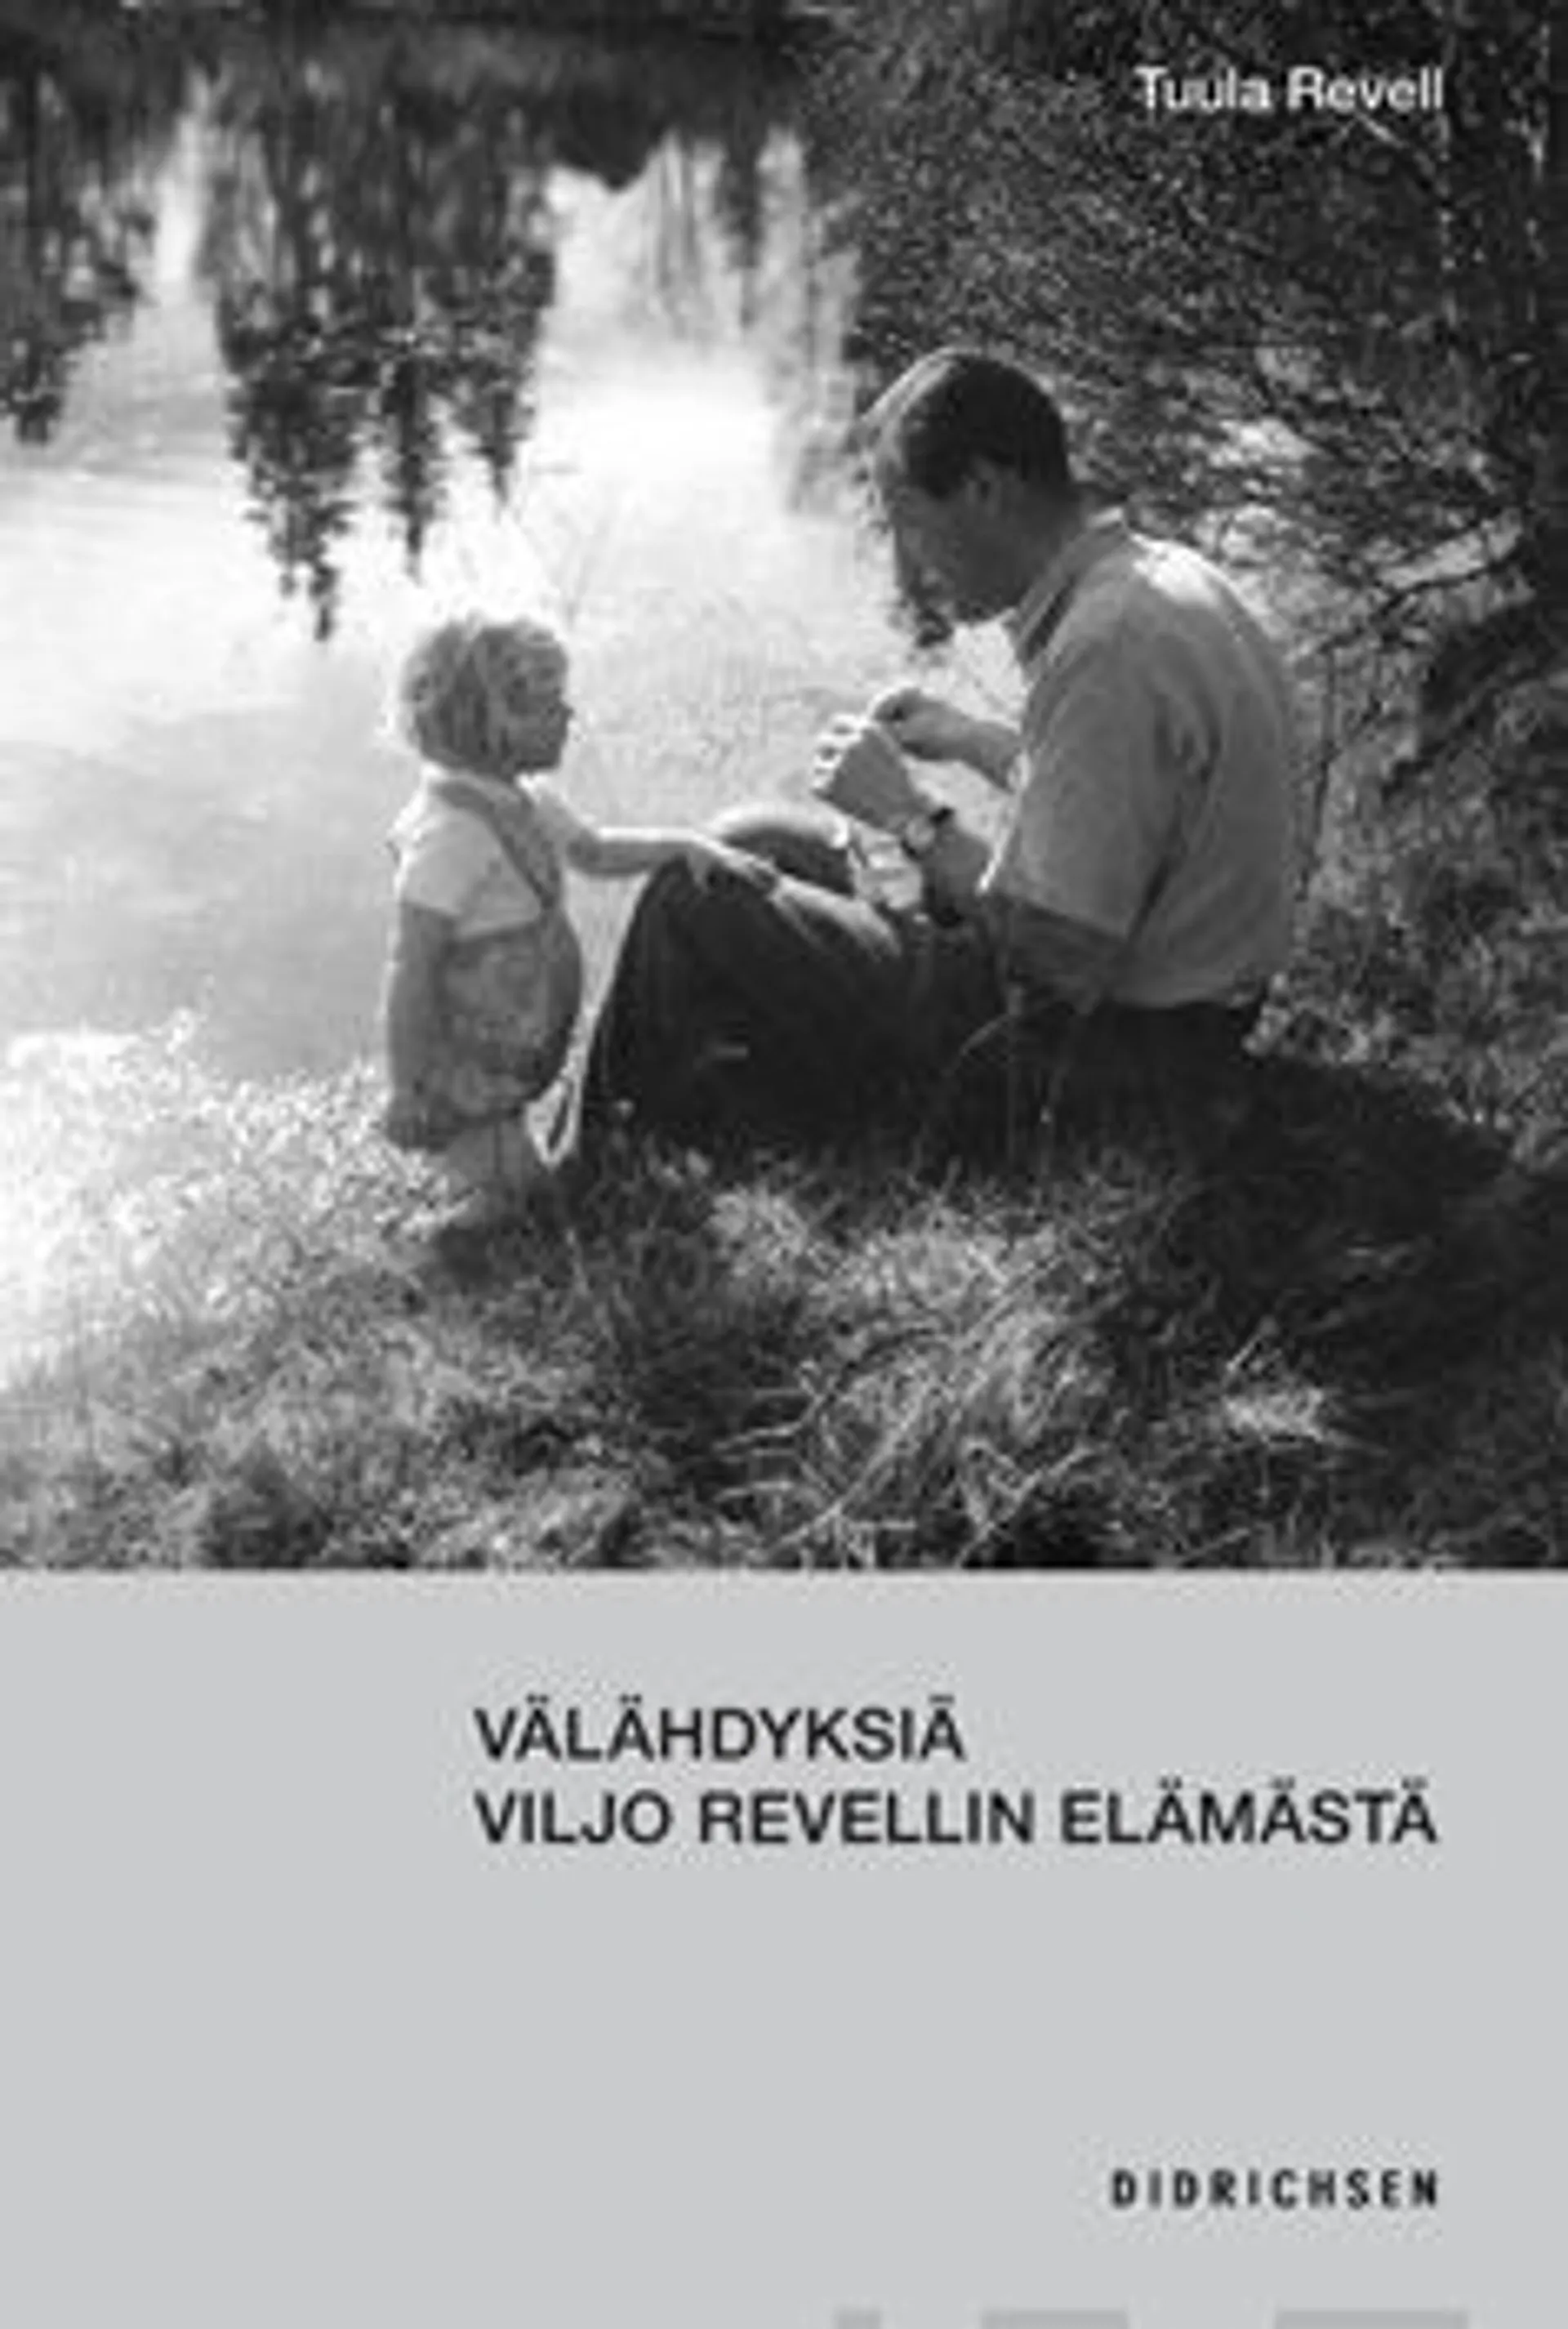 Revell, Välähdyksiä Viljo Revellin elämästä